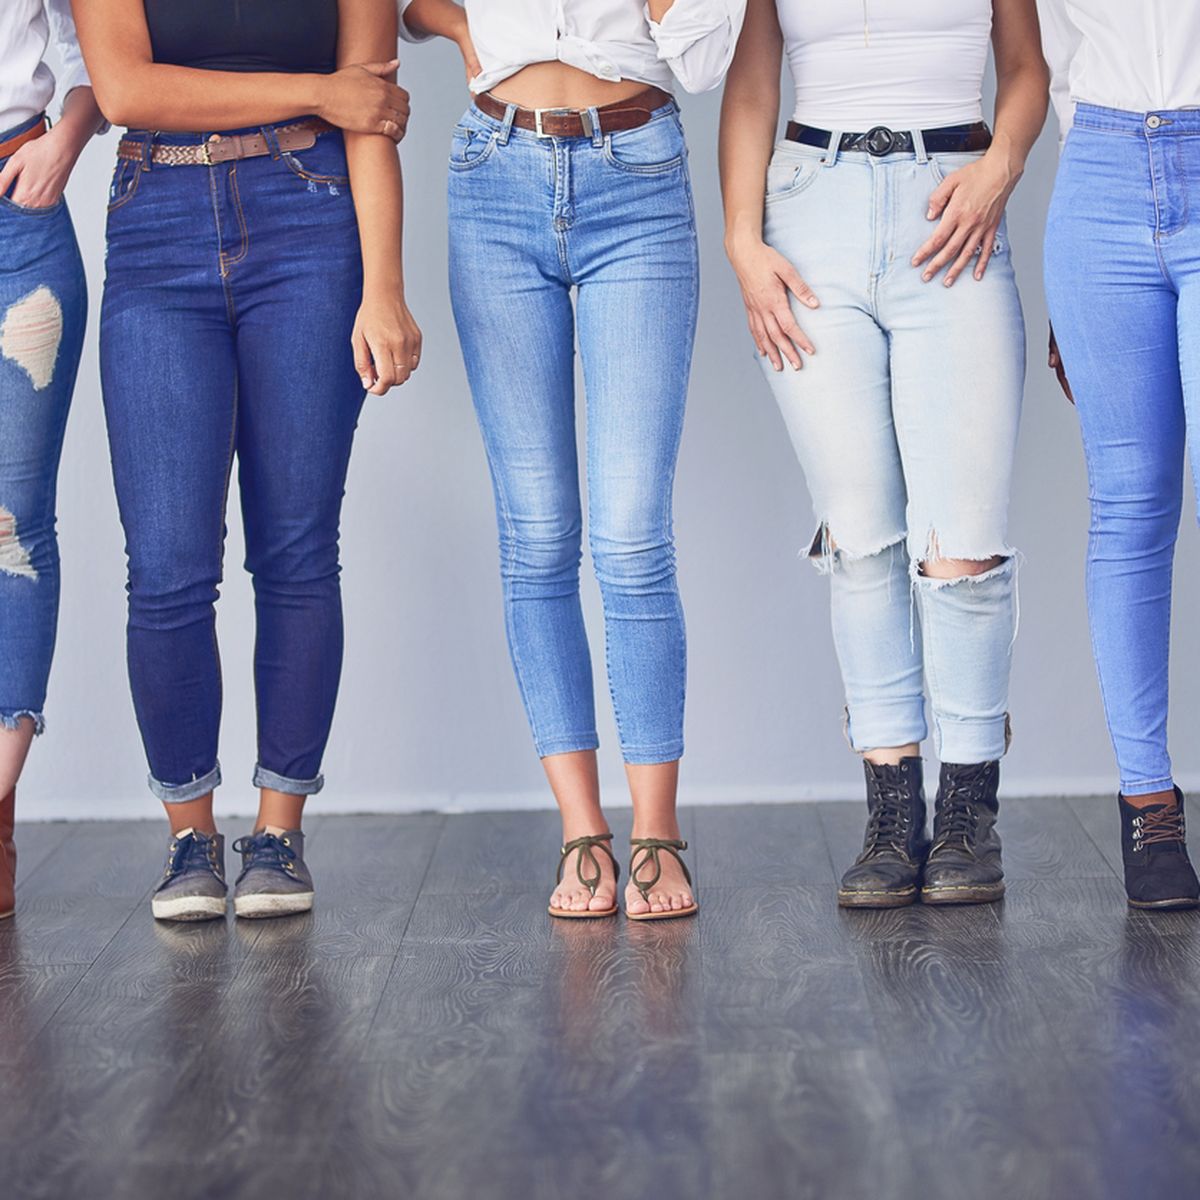 Jeans-Trends: Das wichtigsten 2020 Jeans-Neuheiten für sind die fünf